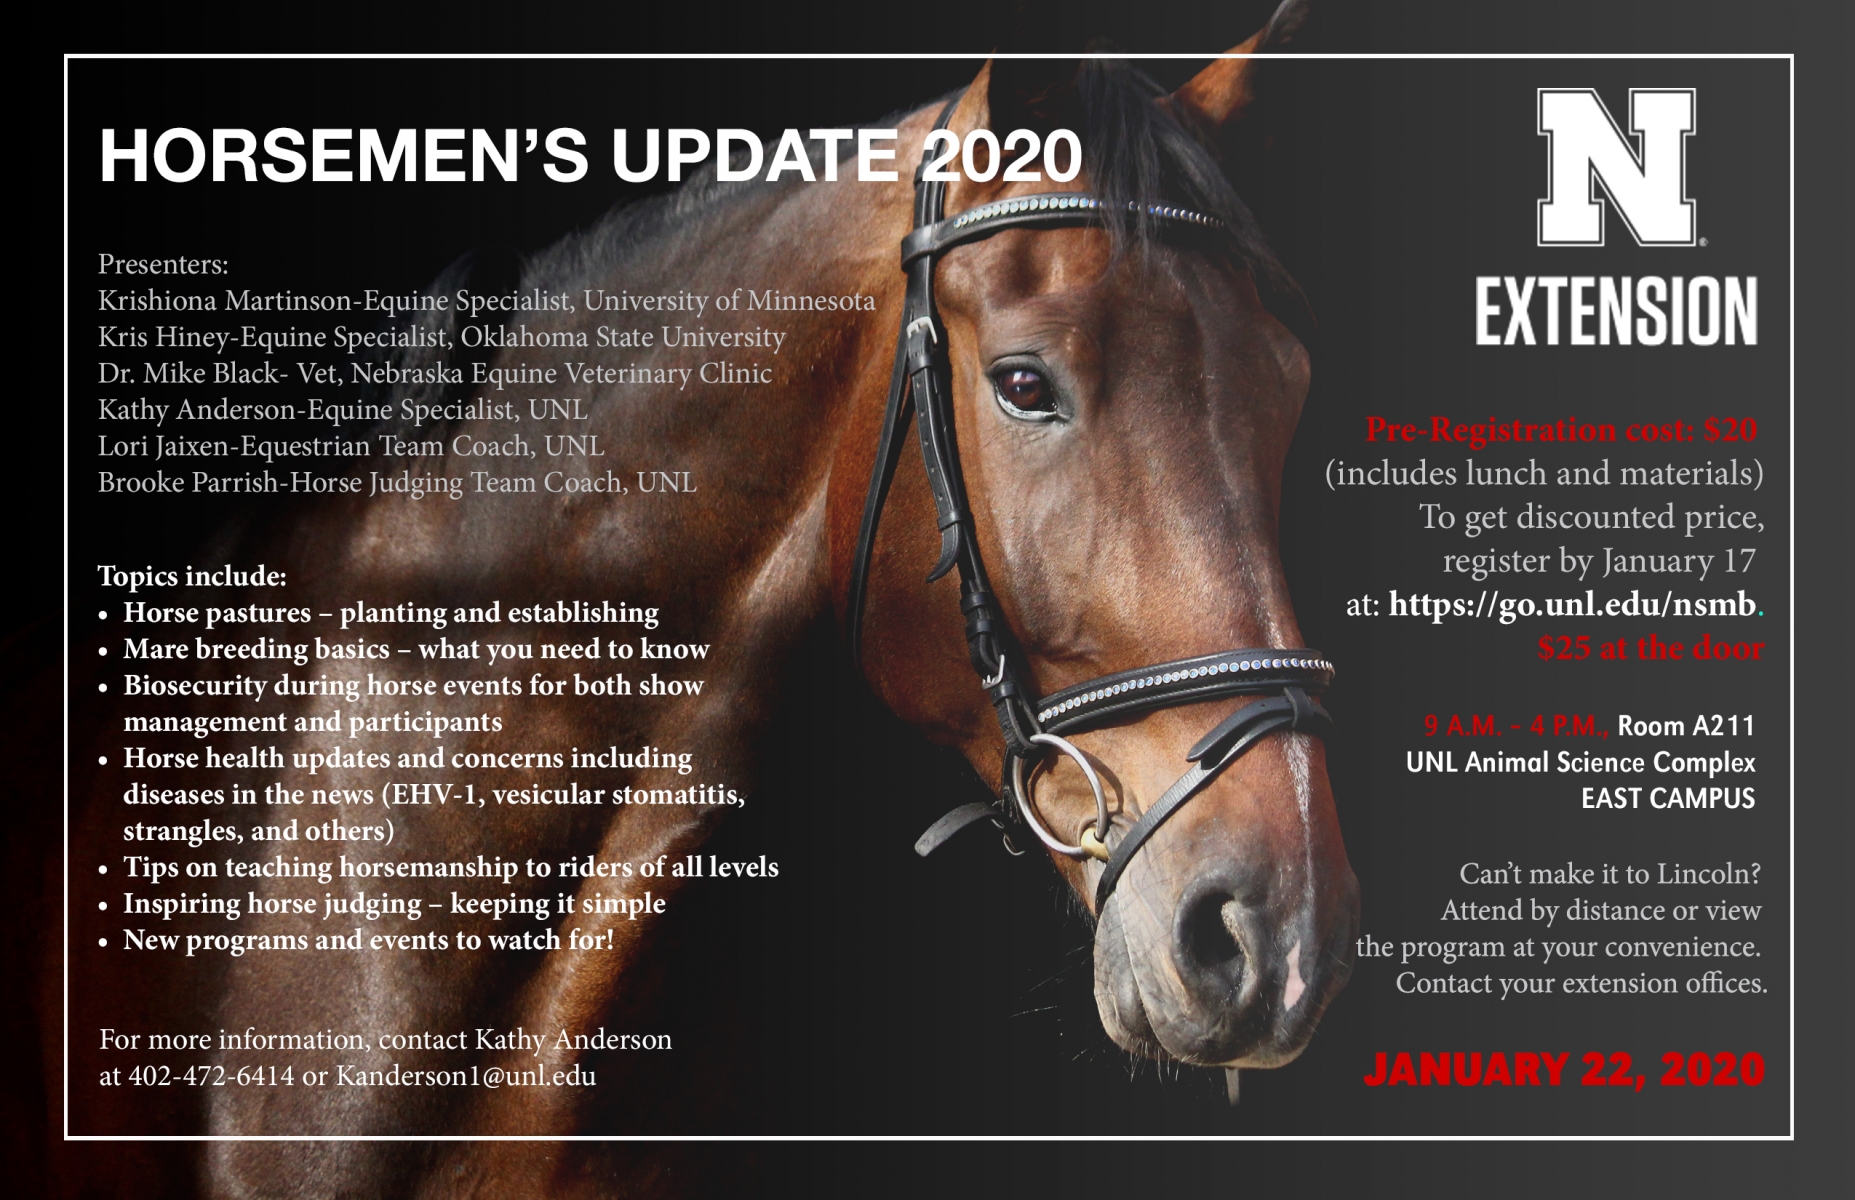 Horsemen's Update 2020 flyer